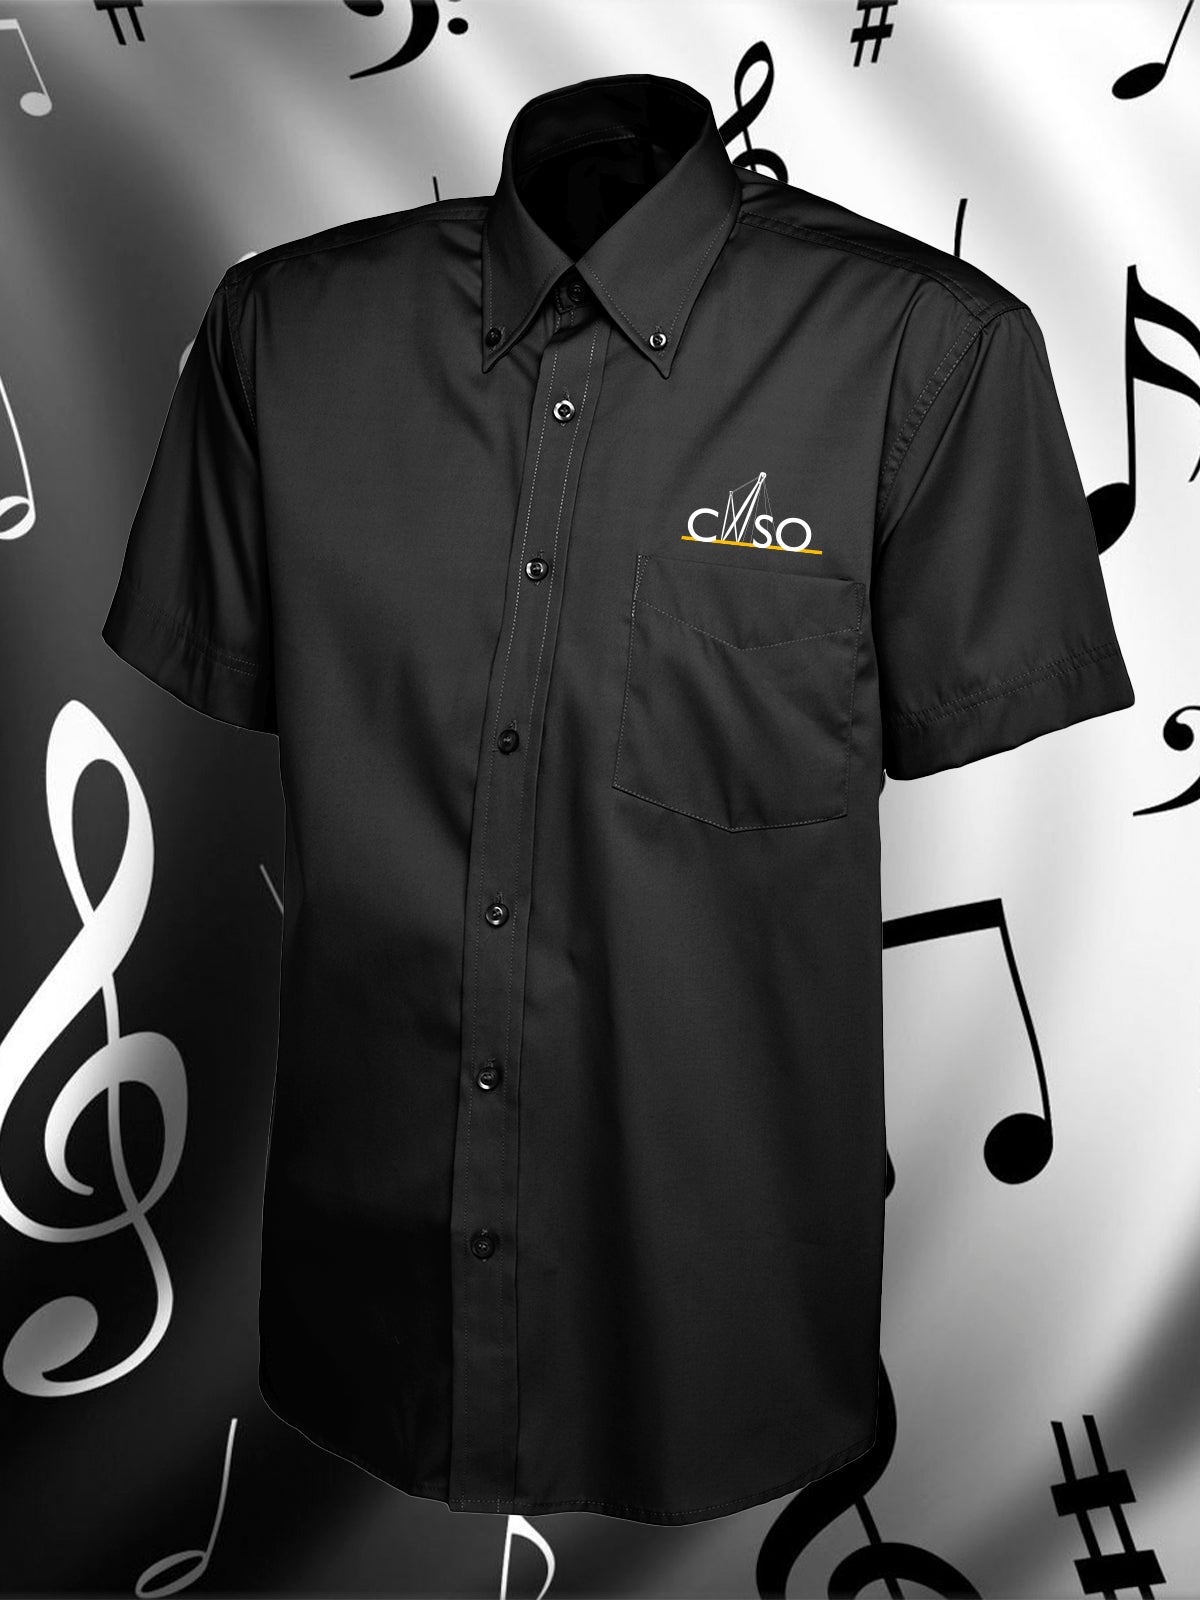 CNSO - UC702 Men's Black Short Sleeve Oxford Shirt